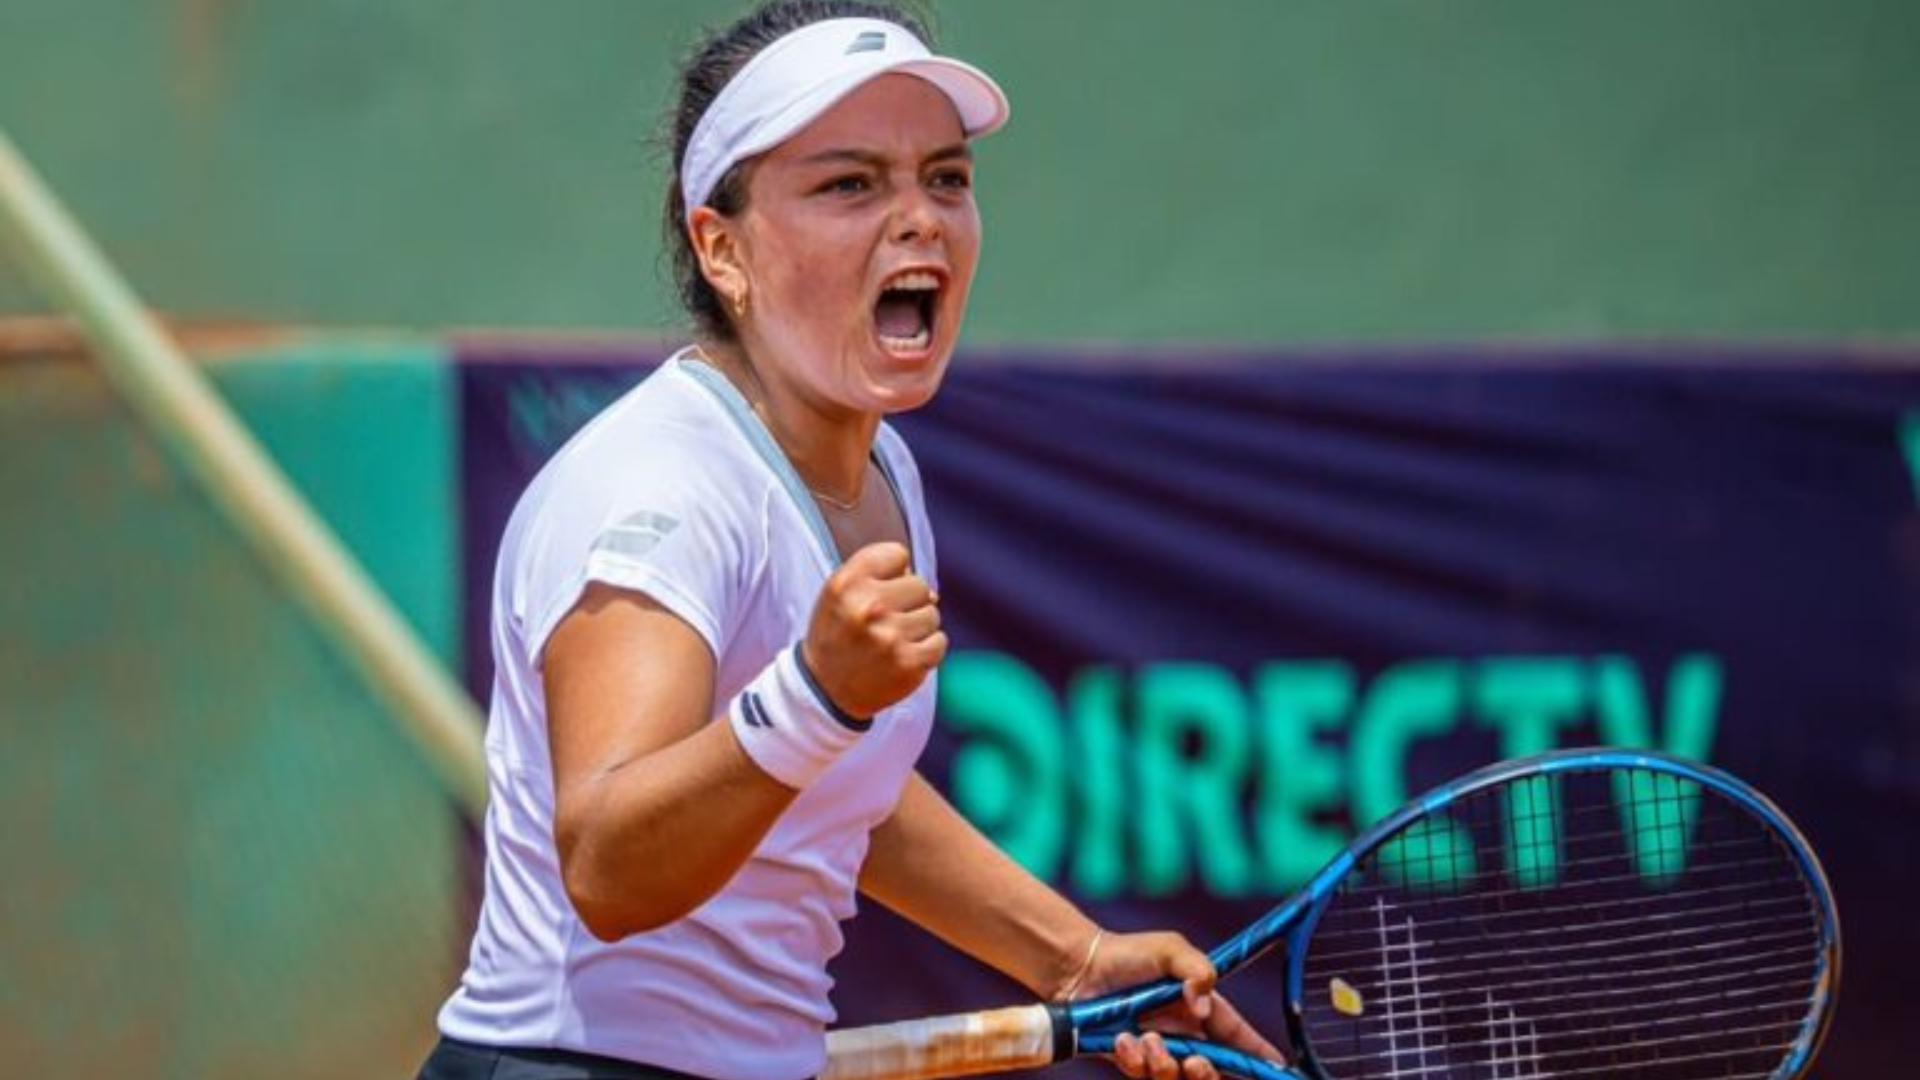 Lucciana Pérez avanzó a semifinales del Ronald Garros Junior 2023 tras derrotar a rusa Ibragimova